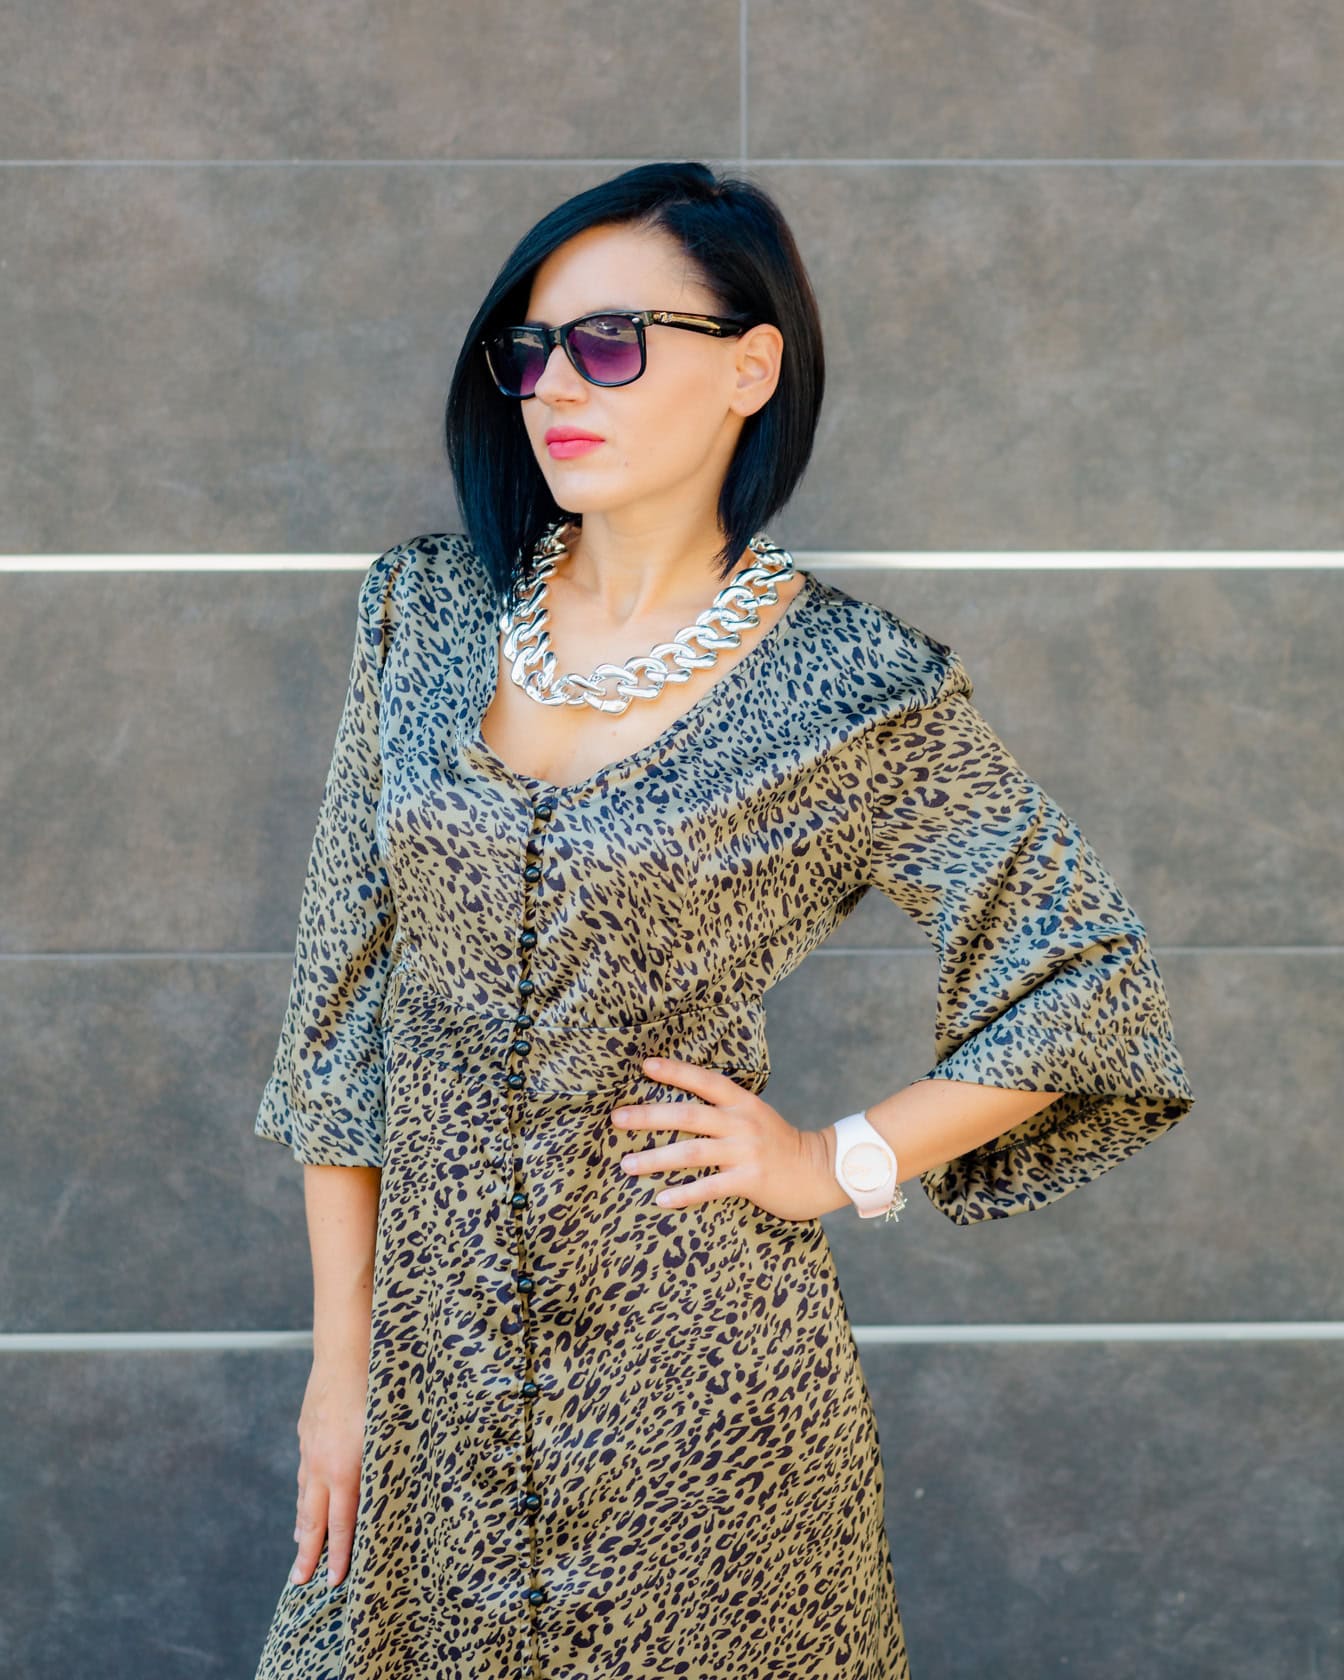 Femme posant en portant une robe à imprimé léopard et des lunettes de soleil